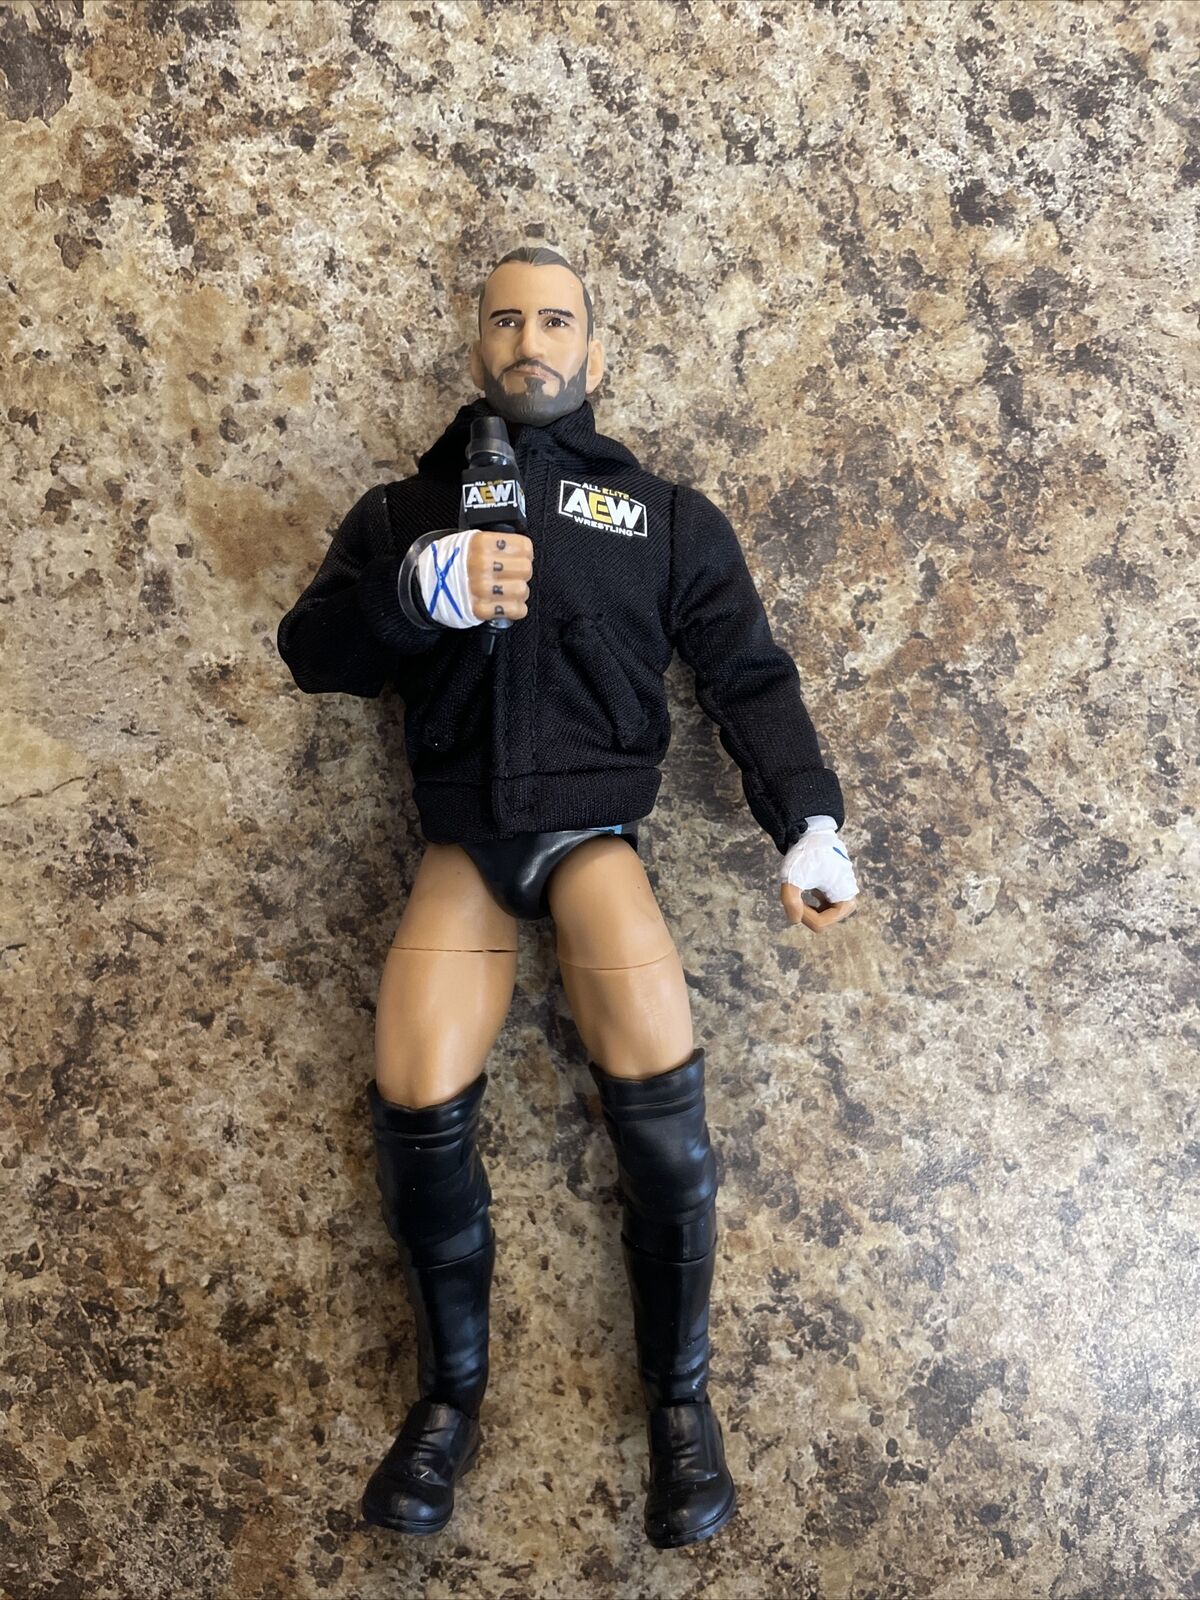 Jazwares CM Punk 7 in Action Figure - AEW0325 Walmart Exclusive WWE ROH AEW